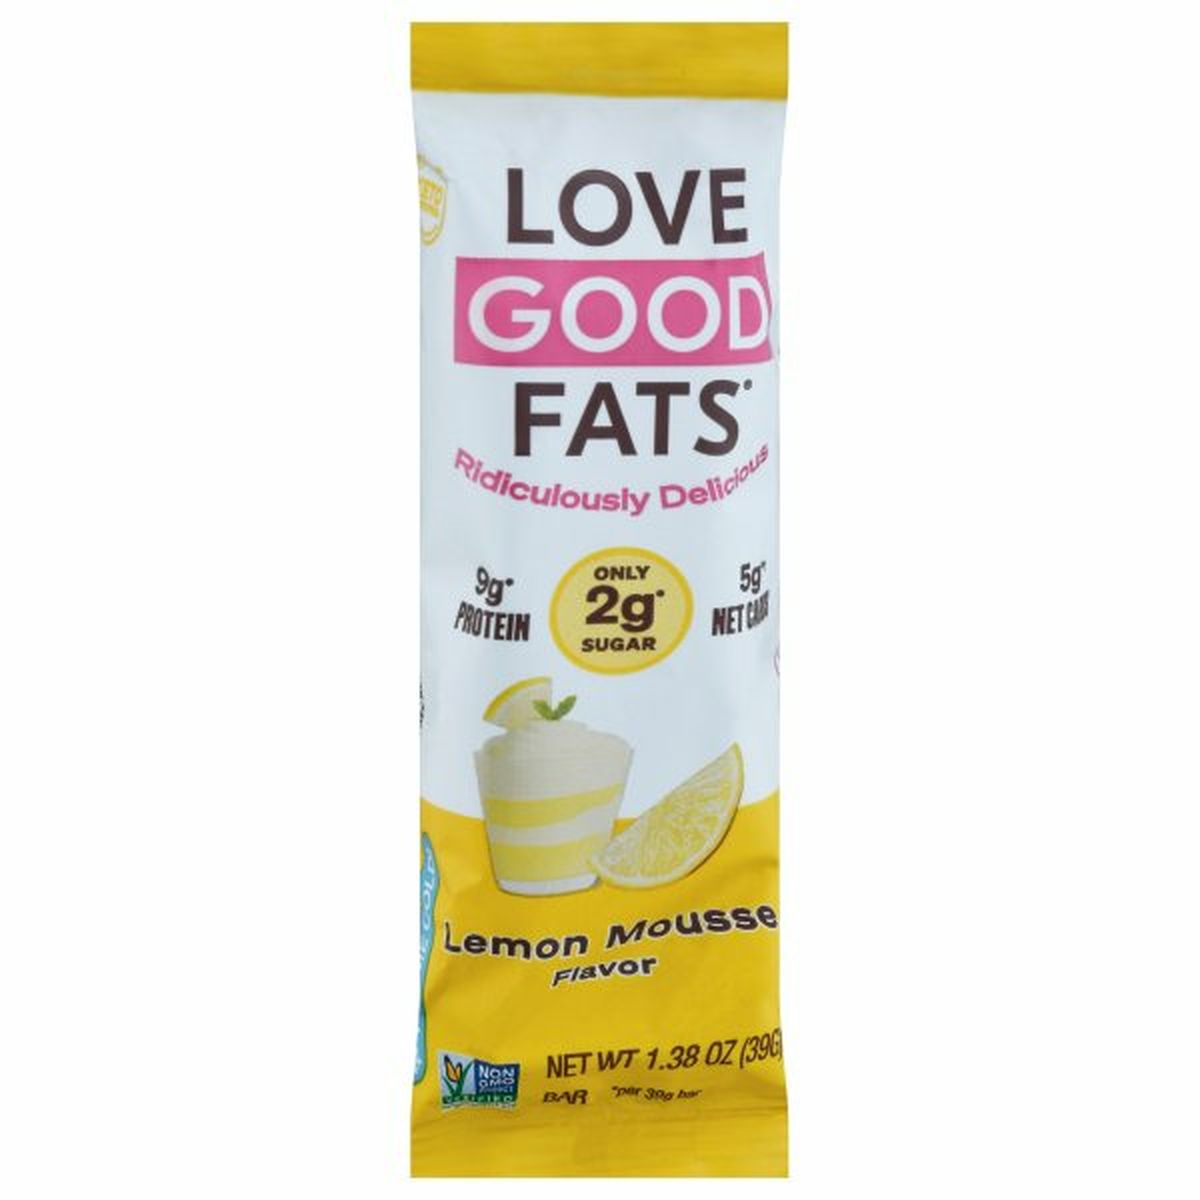 Calories in Love Good Fats Bar, Lemon Mousse